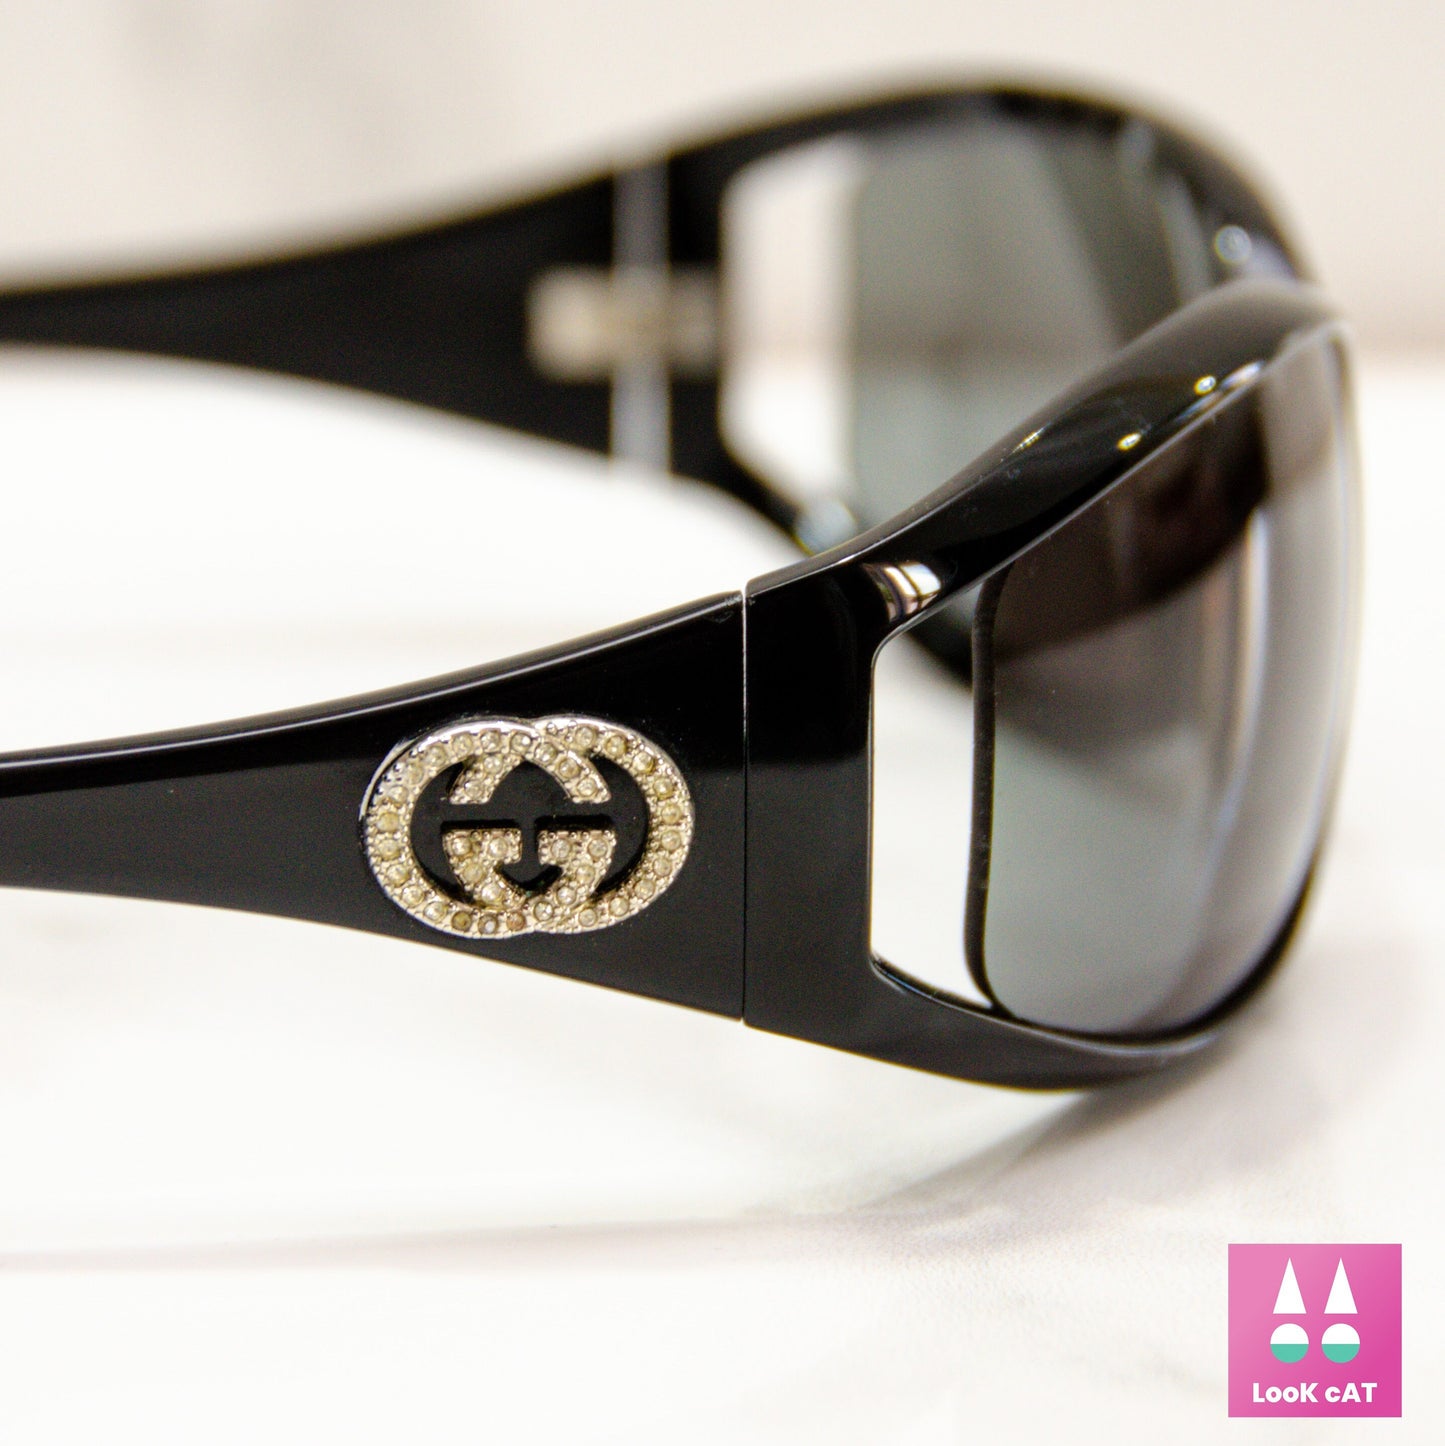 Gucci 2989 strass occhiali da sole vintage rari wrap shield strass occhiali lunetta brille anni '90 y2k